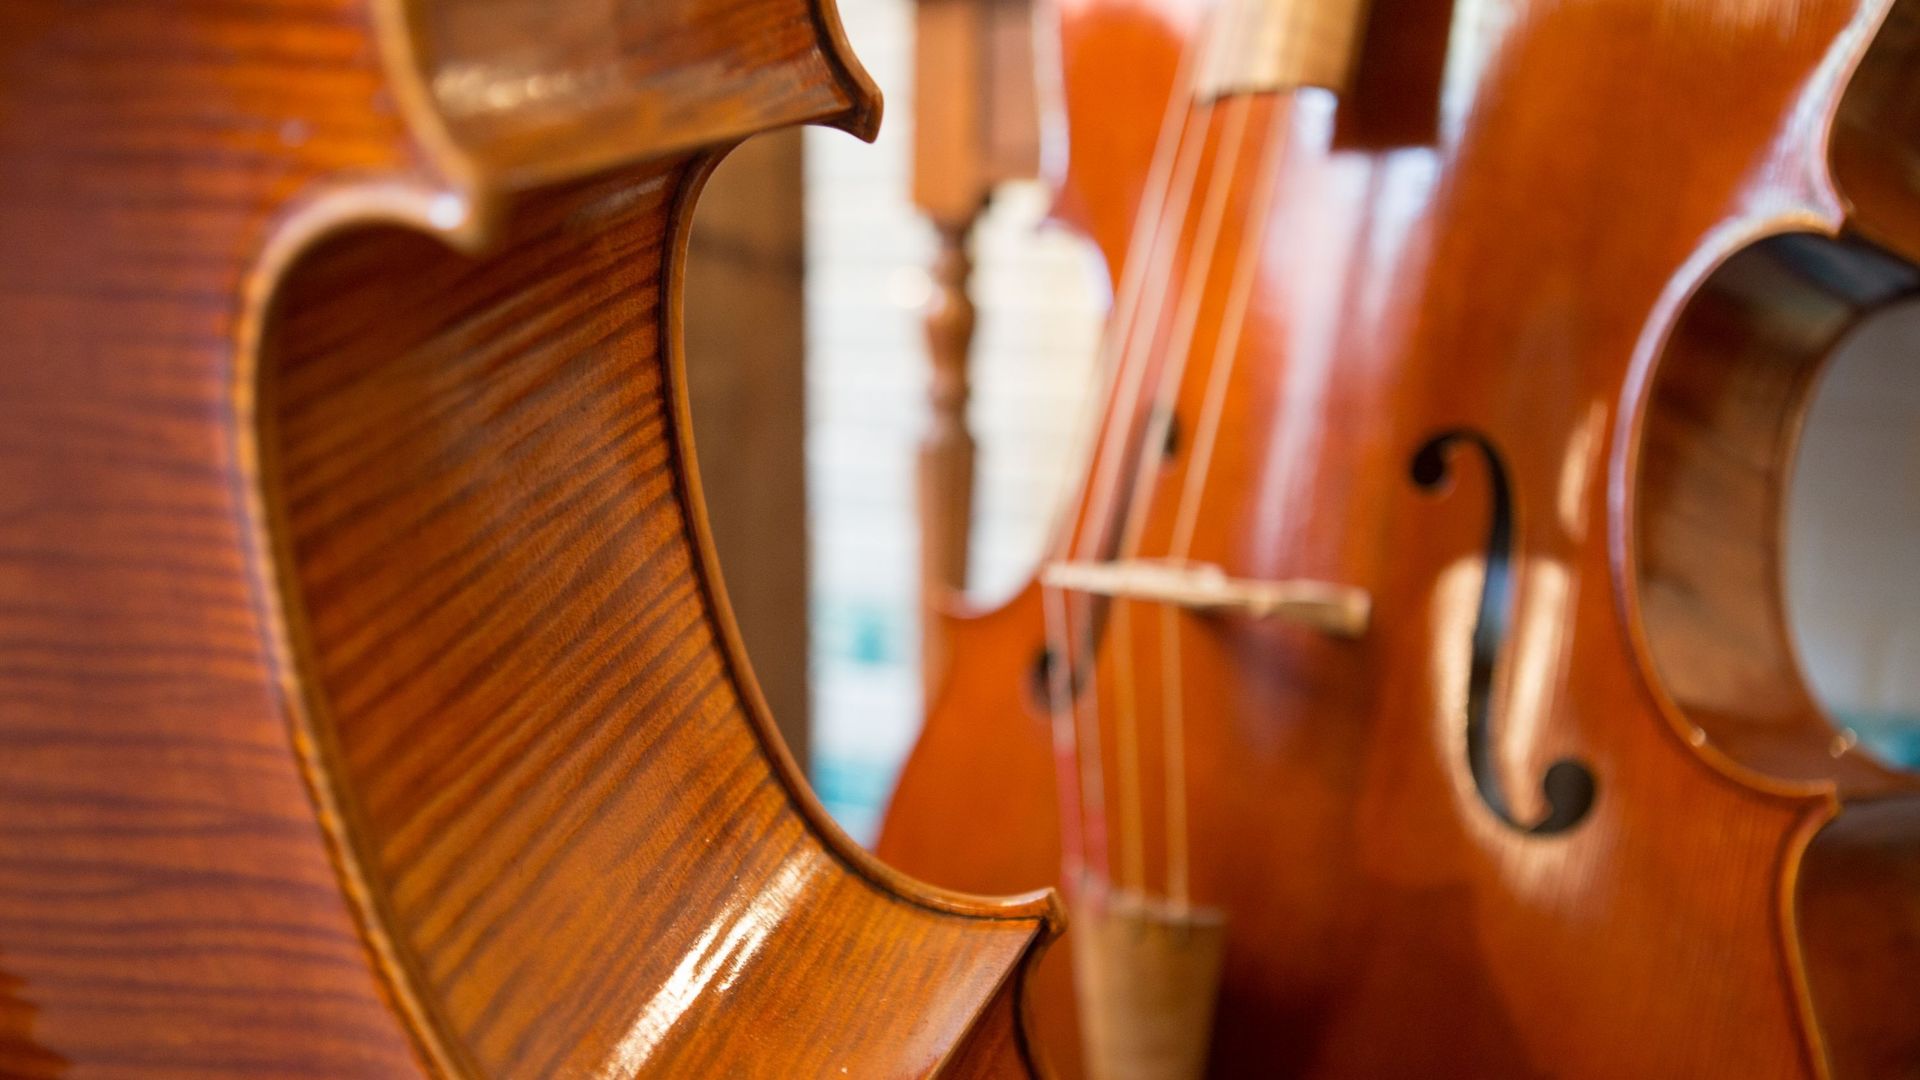 Archives du Concours Reine Elisabeth : pourquoi mettre à l’honneur le violoncelle ?